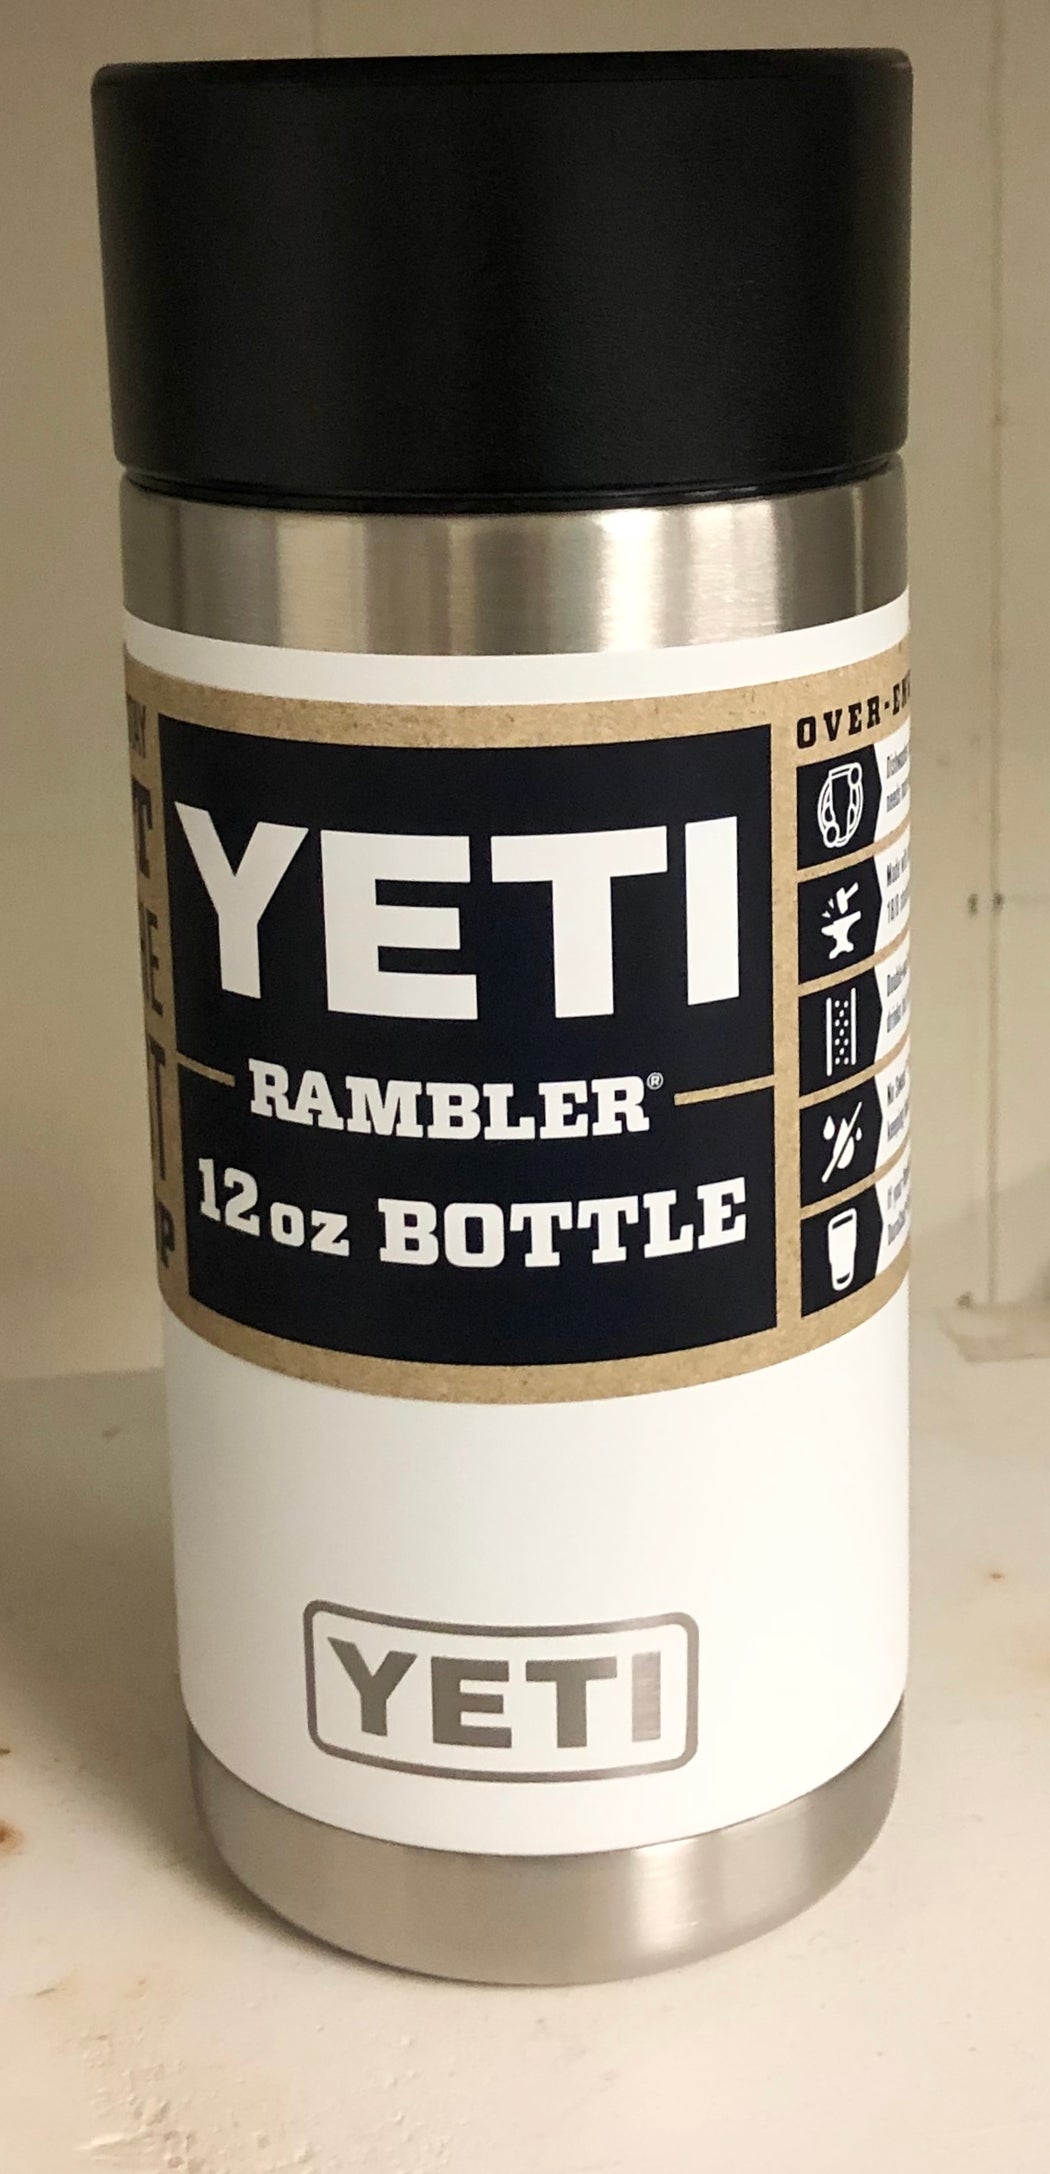 Yeti Rambler 12oz Bottle